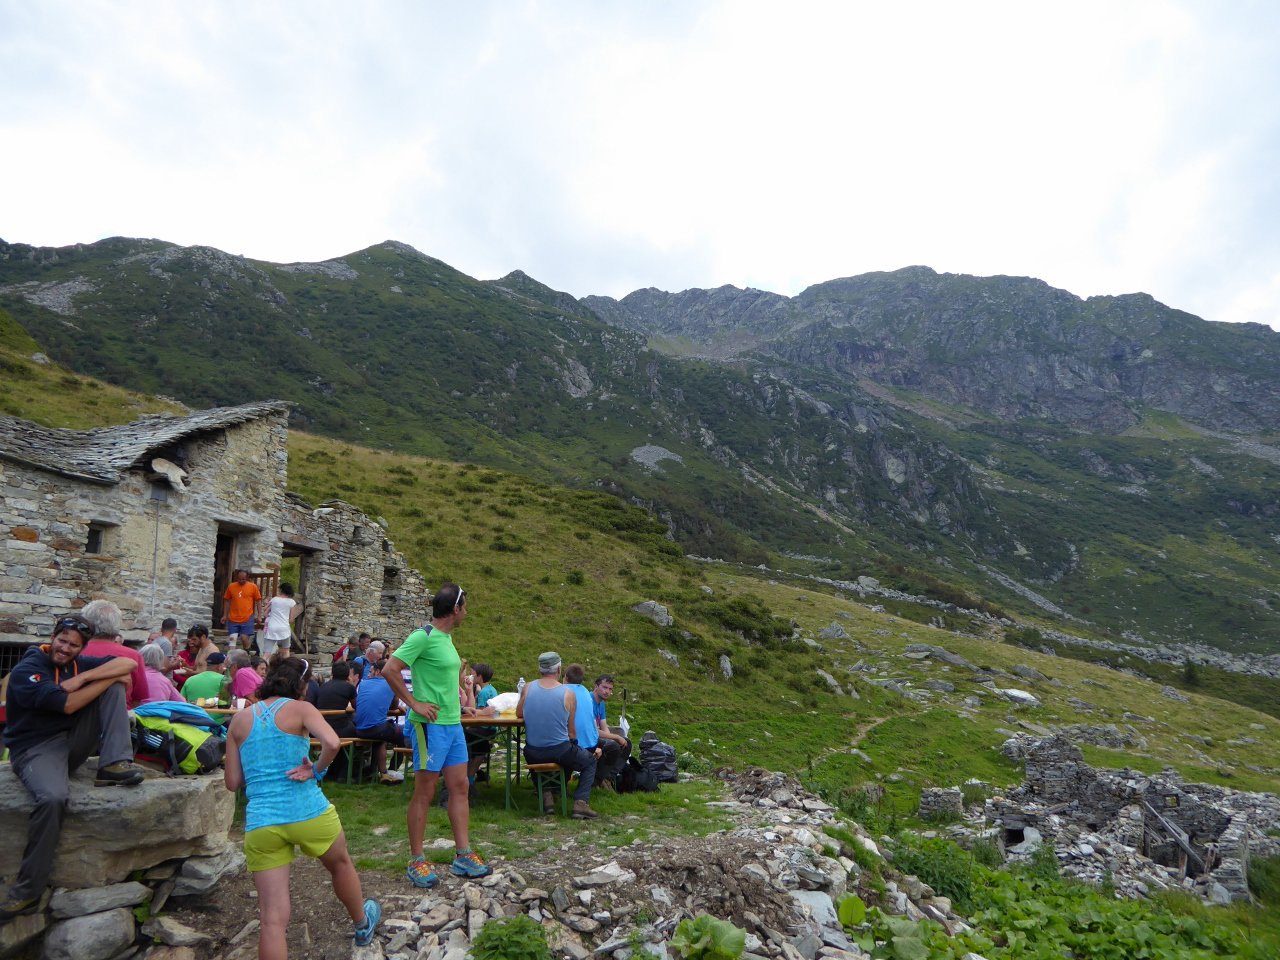 tradizionale sosta conviviale (e alimentare...) al ritorno all'alpe Vasnera